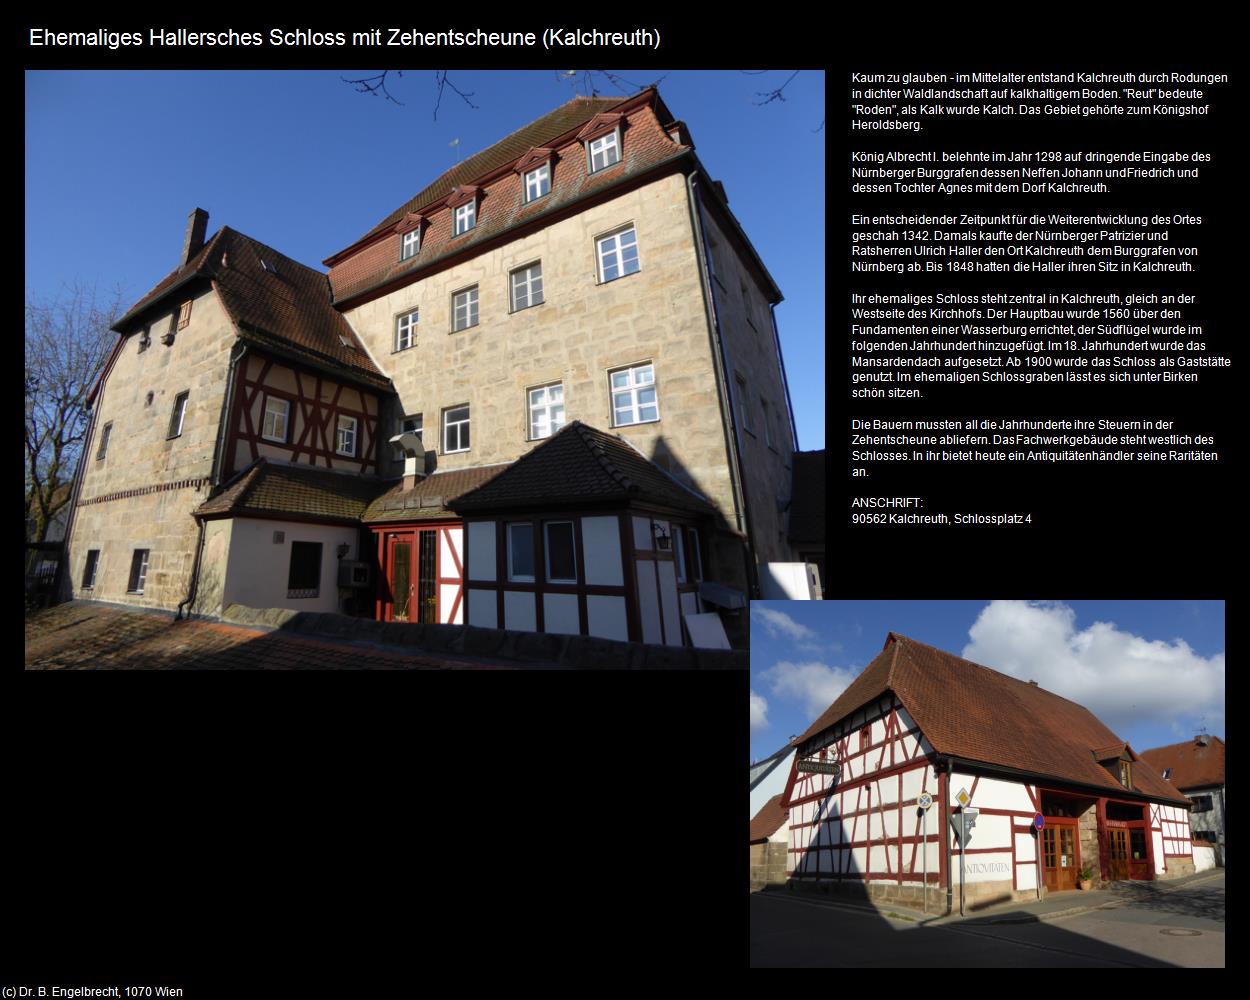 Ehem. Hallersche Schloss mit Zehentscheune (Kalchreuth) in Kulturatlas-BAYERN